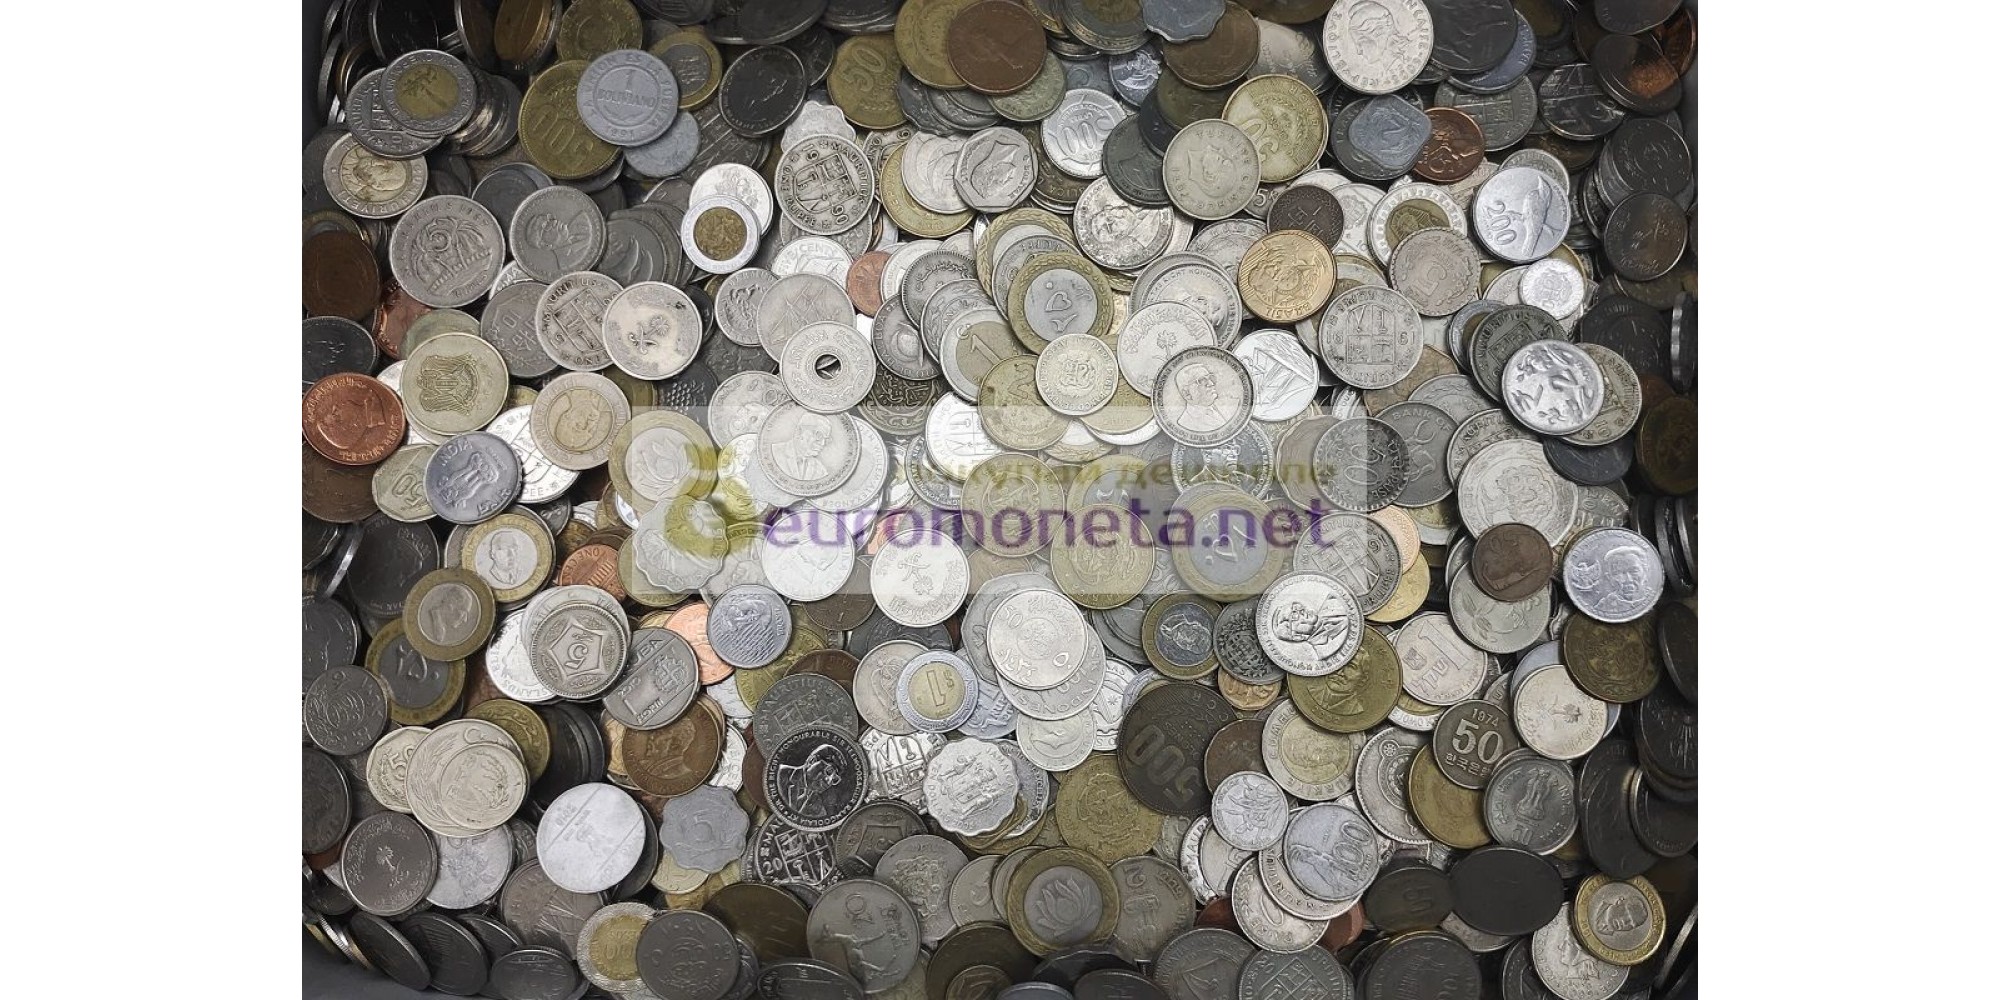 5 кг 80 г 5. 1 Кг монет авит Европа. Купить монеты на вес в запаянных мешках.